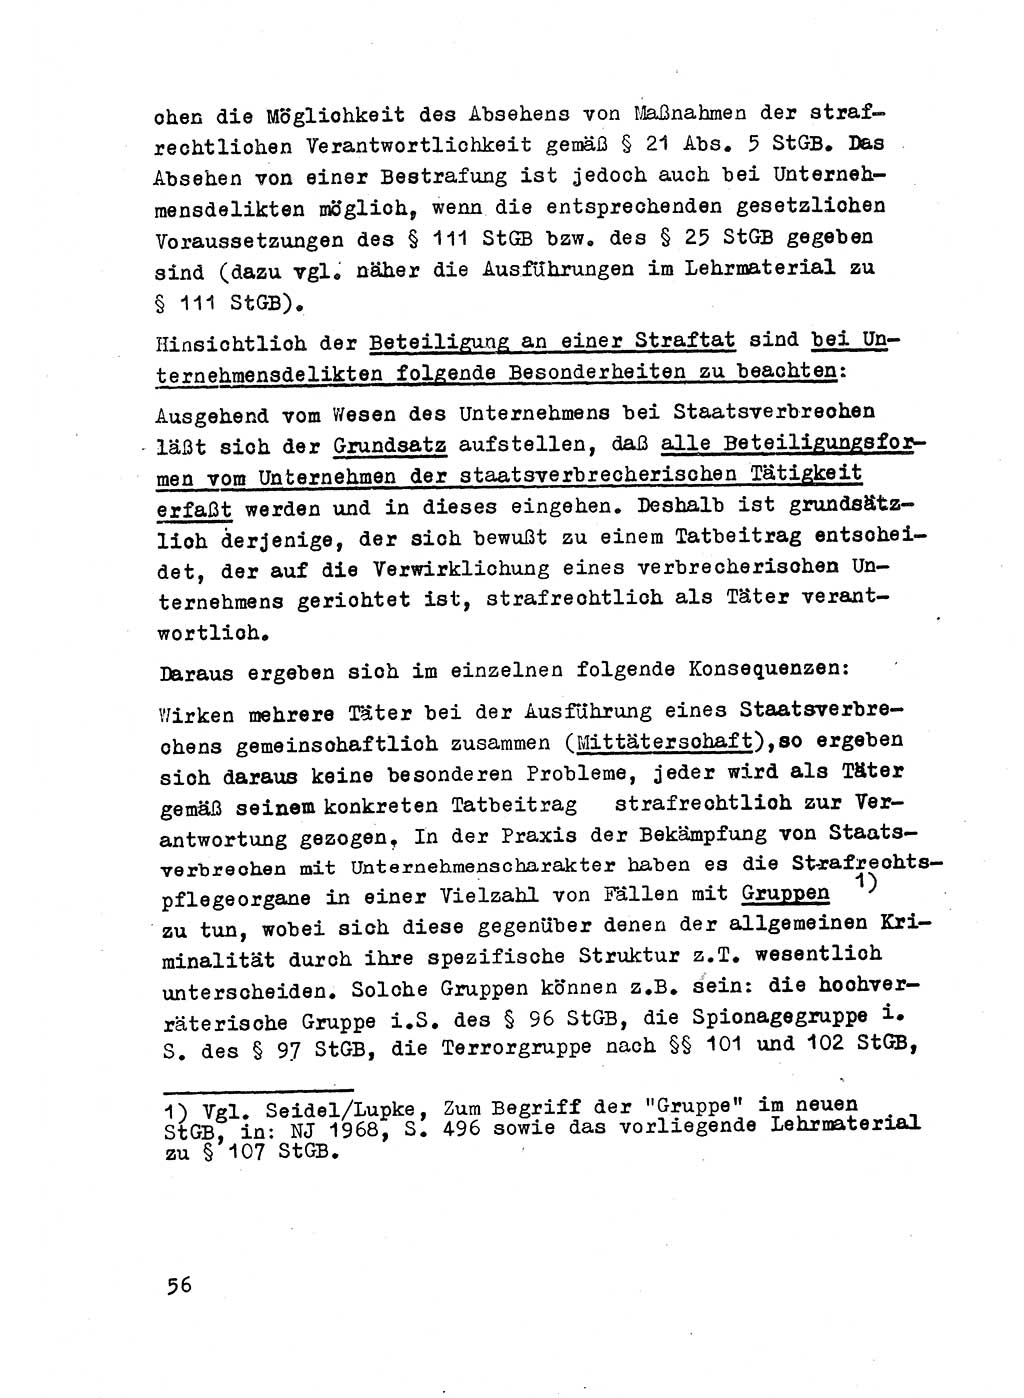 Strafrecht der DDR (Deutsche Demokratische Republik), Besonderer Teil, Lehrmaterial, Heft 2 1969, Seite 56 (Strafr. DDR BT Lehrmat. H. 2 1969, S. 56)